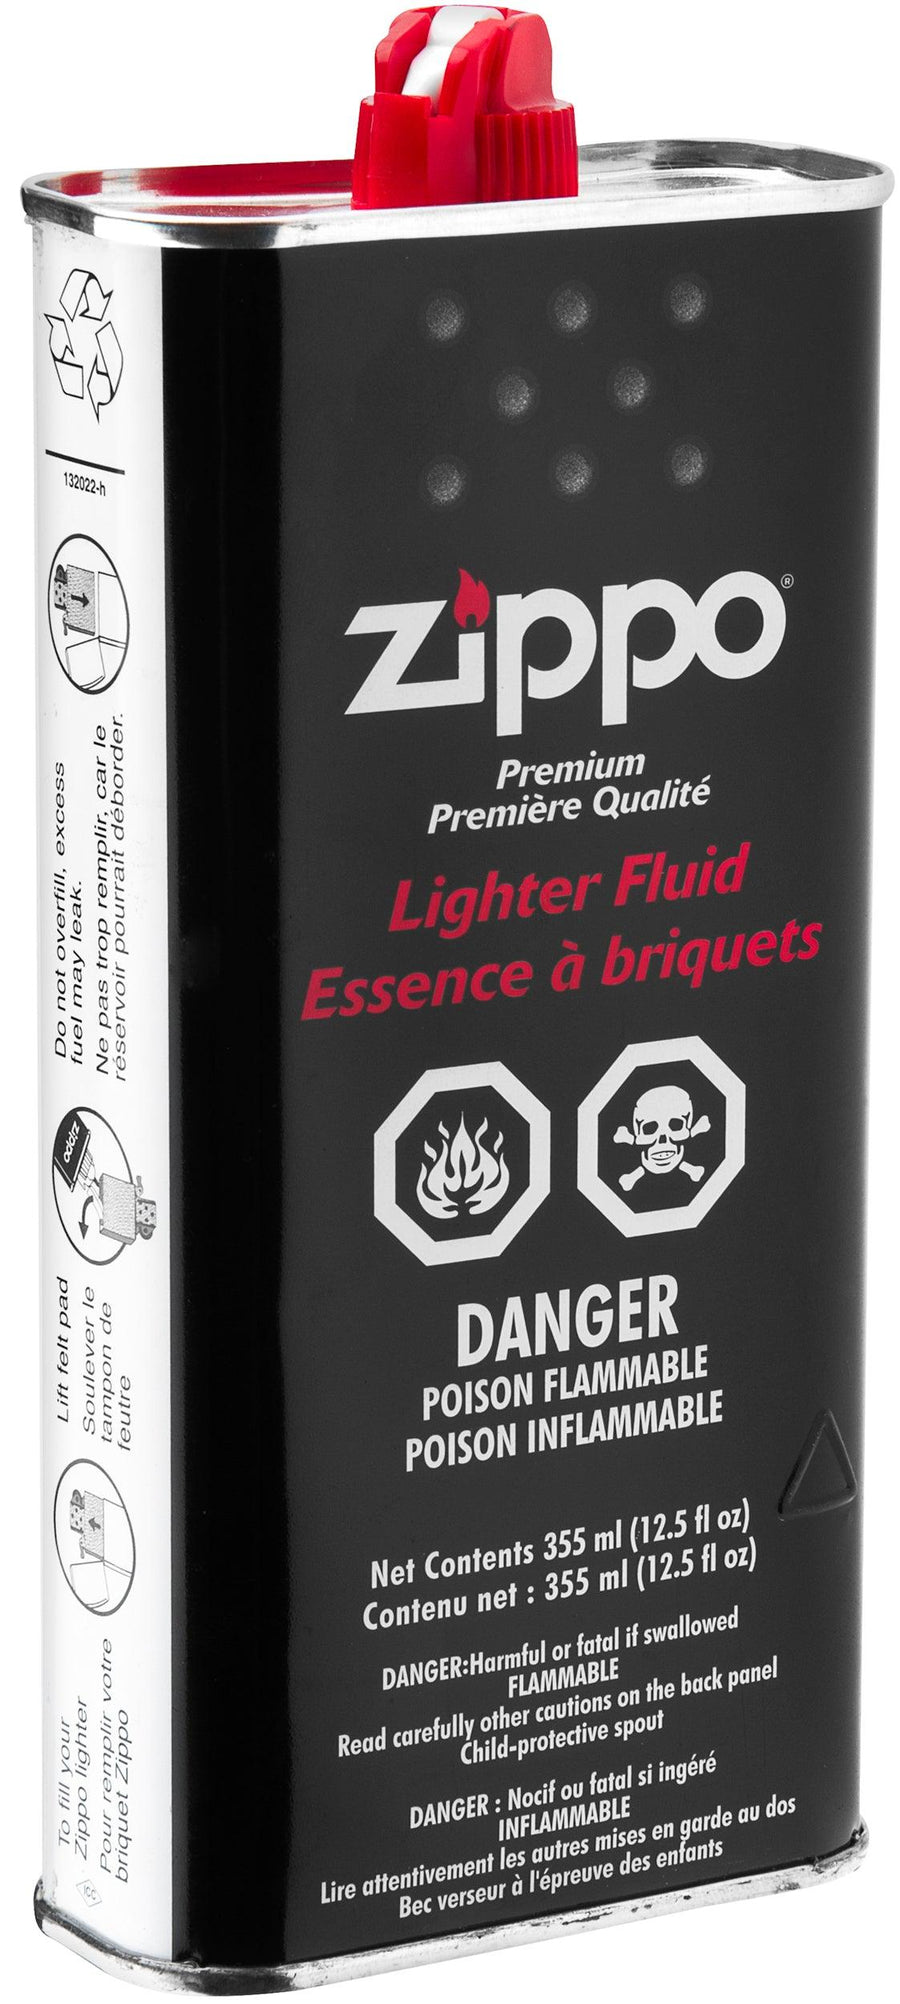 Zippo Premium 355ml - Lighter Fluid (Box of 12) - Quecan